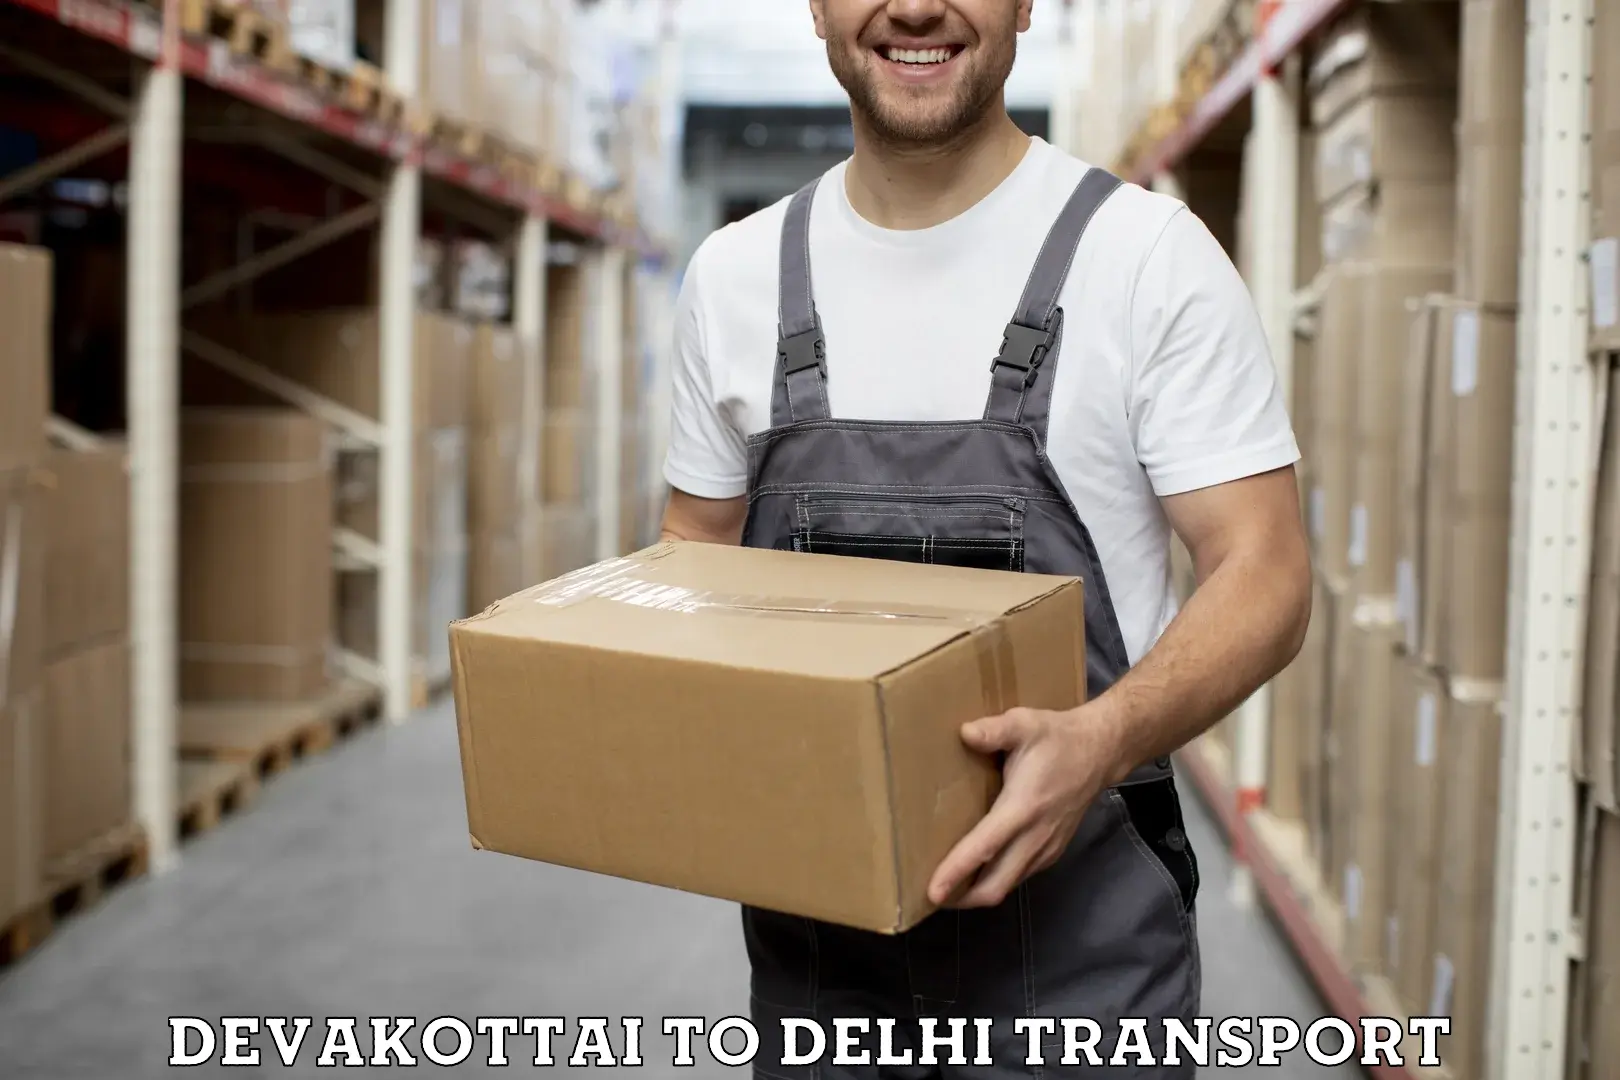 Bike shipping service Devakottai to NIT Delhi